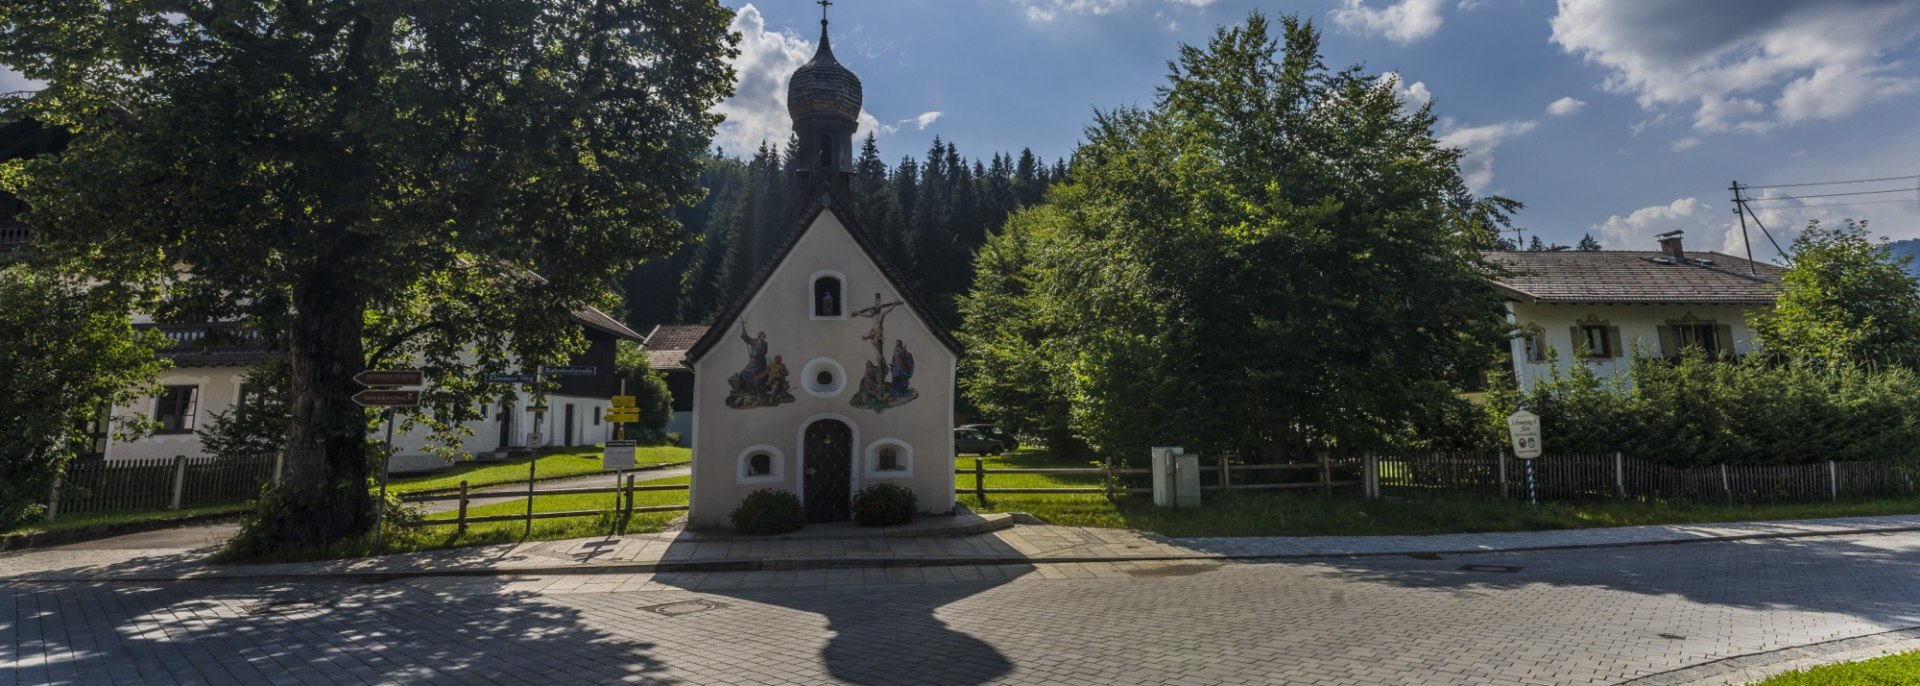 Idyllisch gelegen zwischen Mittenwald, Krün und Garmisch-Partenkirchen liegt Klais mit seiner alten Kapelle., © Alpenwelt Karwendel | Wolfgang Ehn